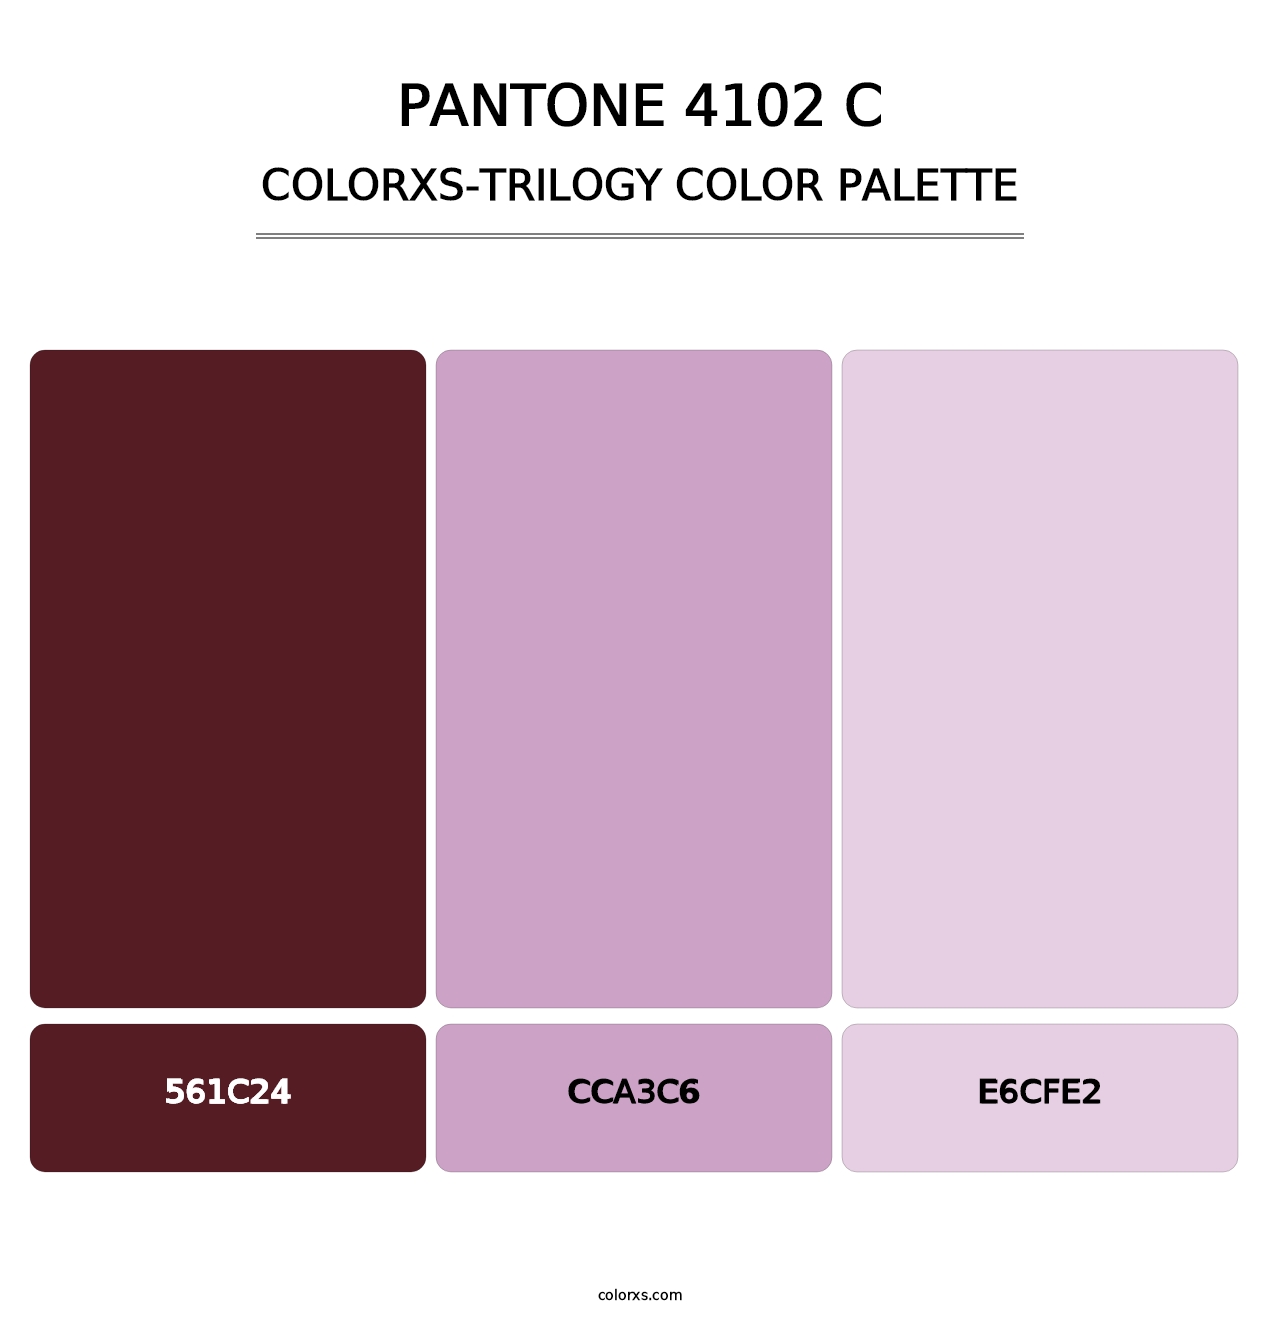 PANTONE 4102 C - Colorxs Trilogy Palette